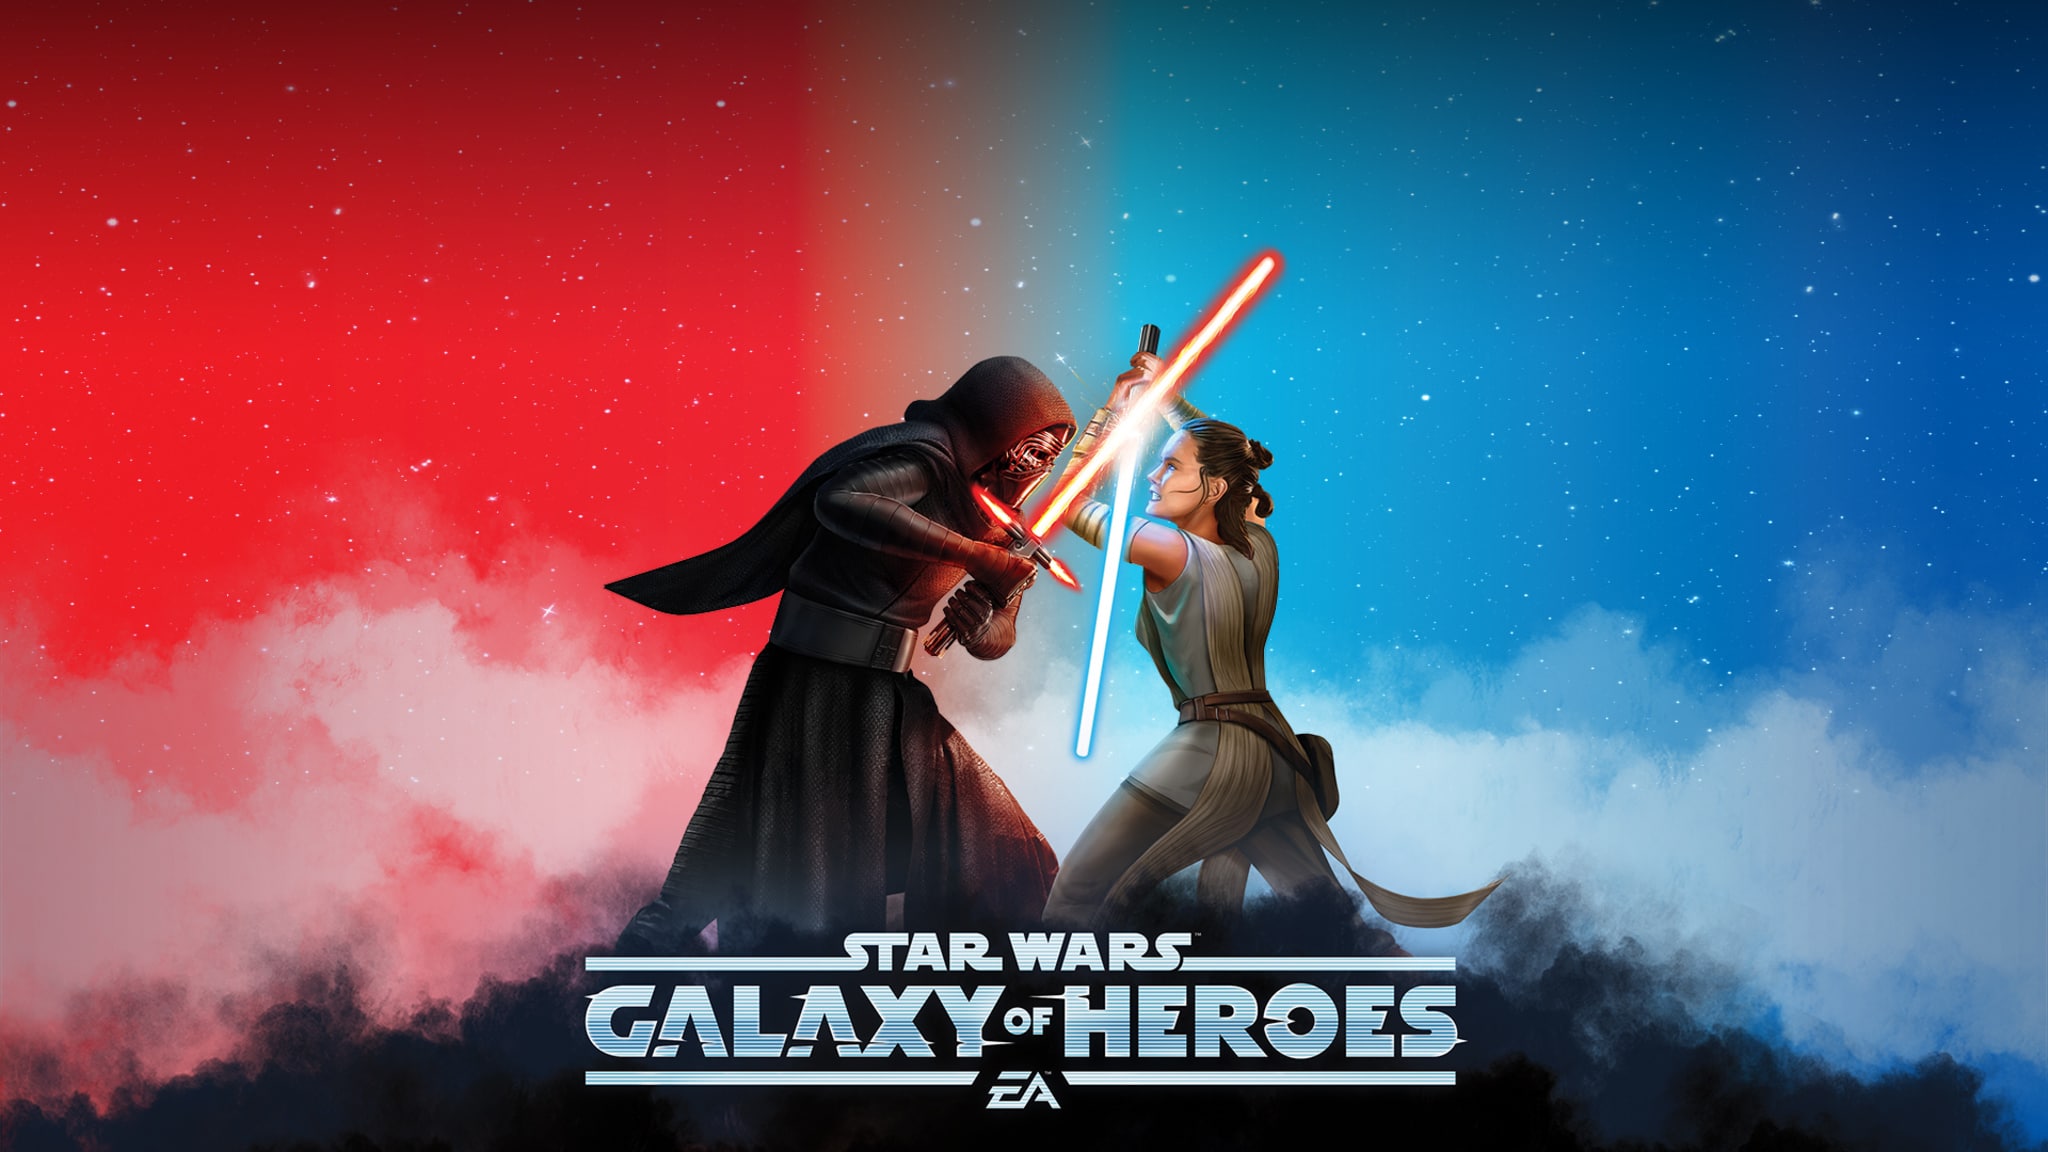 offline version of star wars galaxy heroes